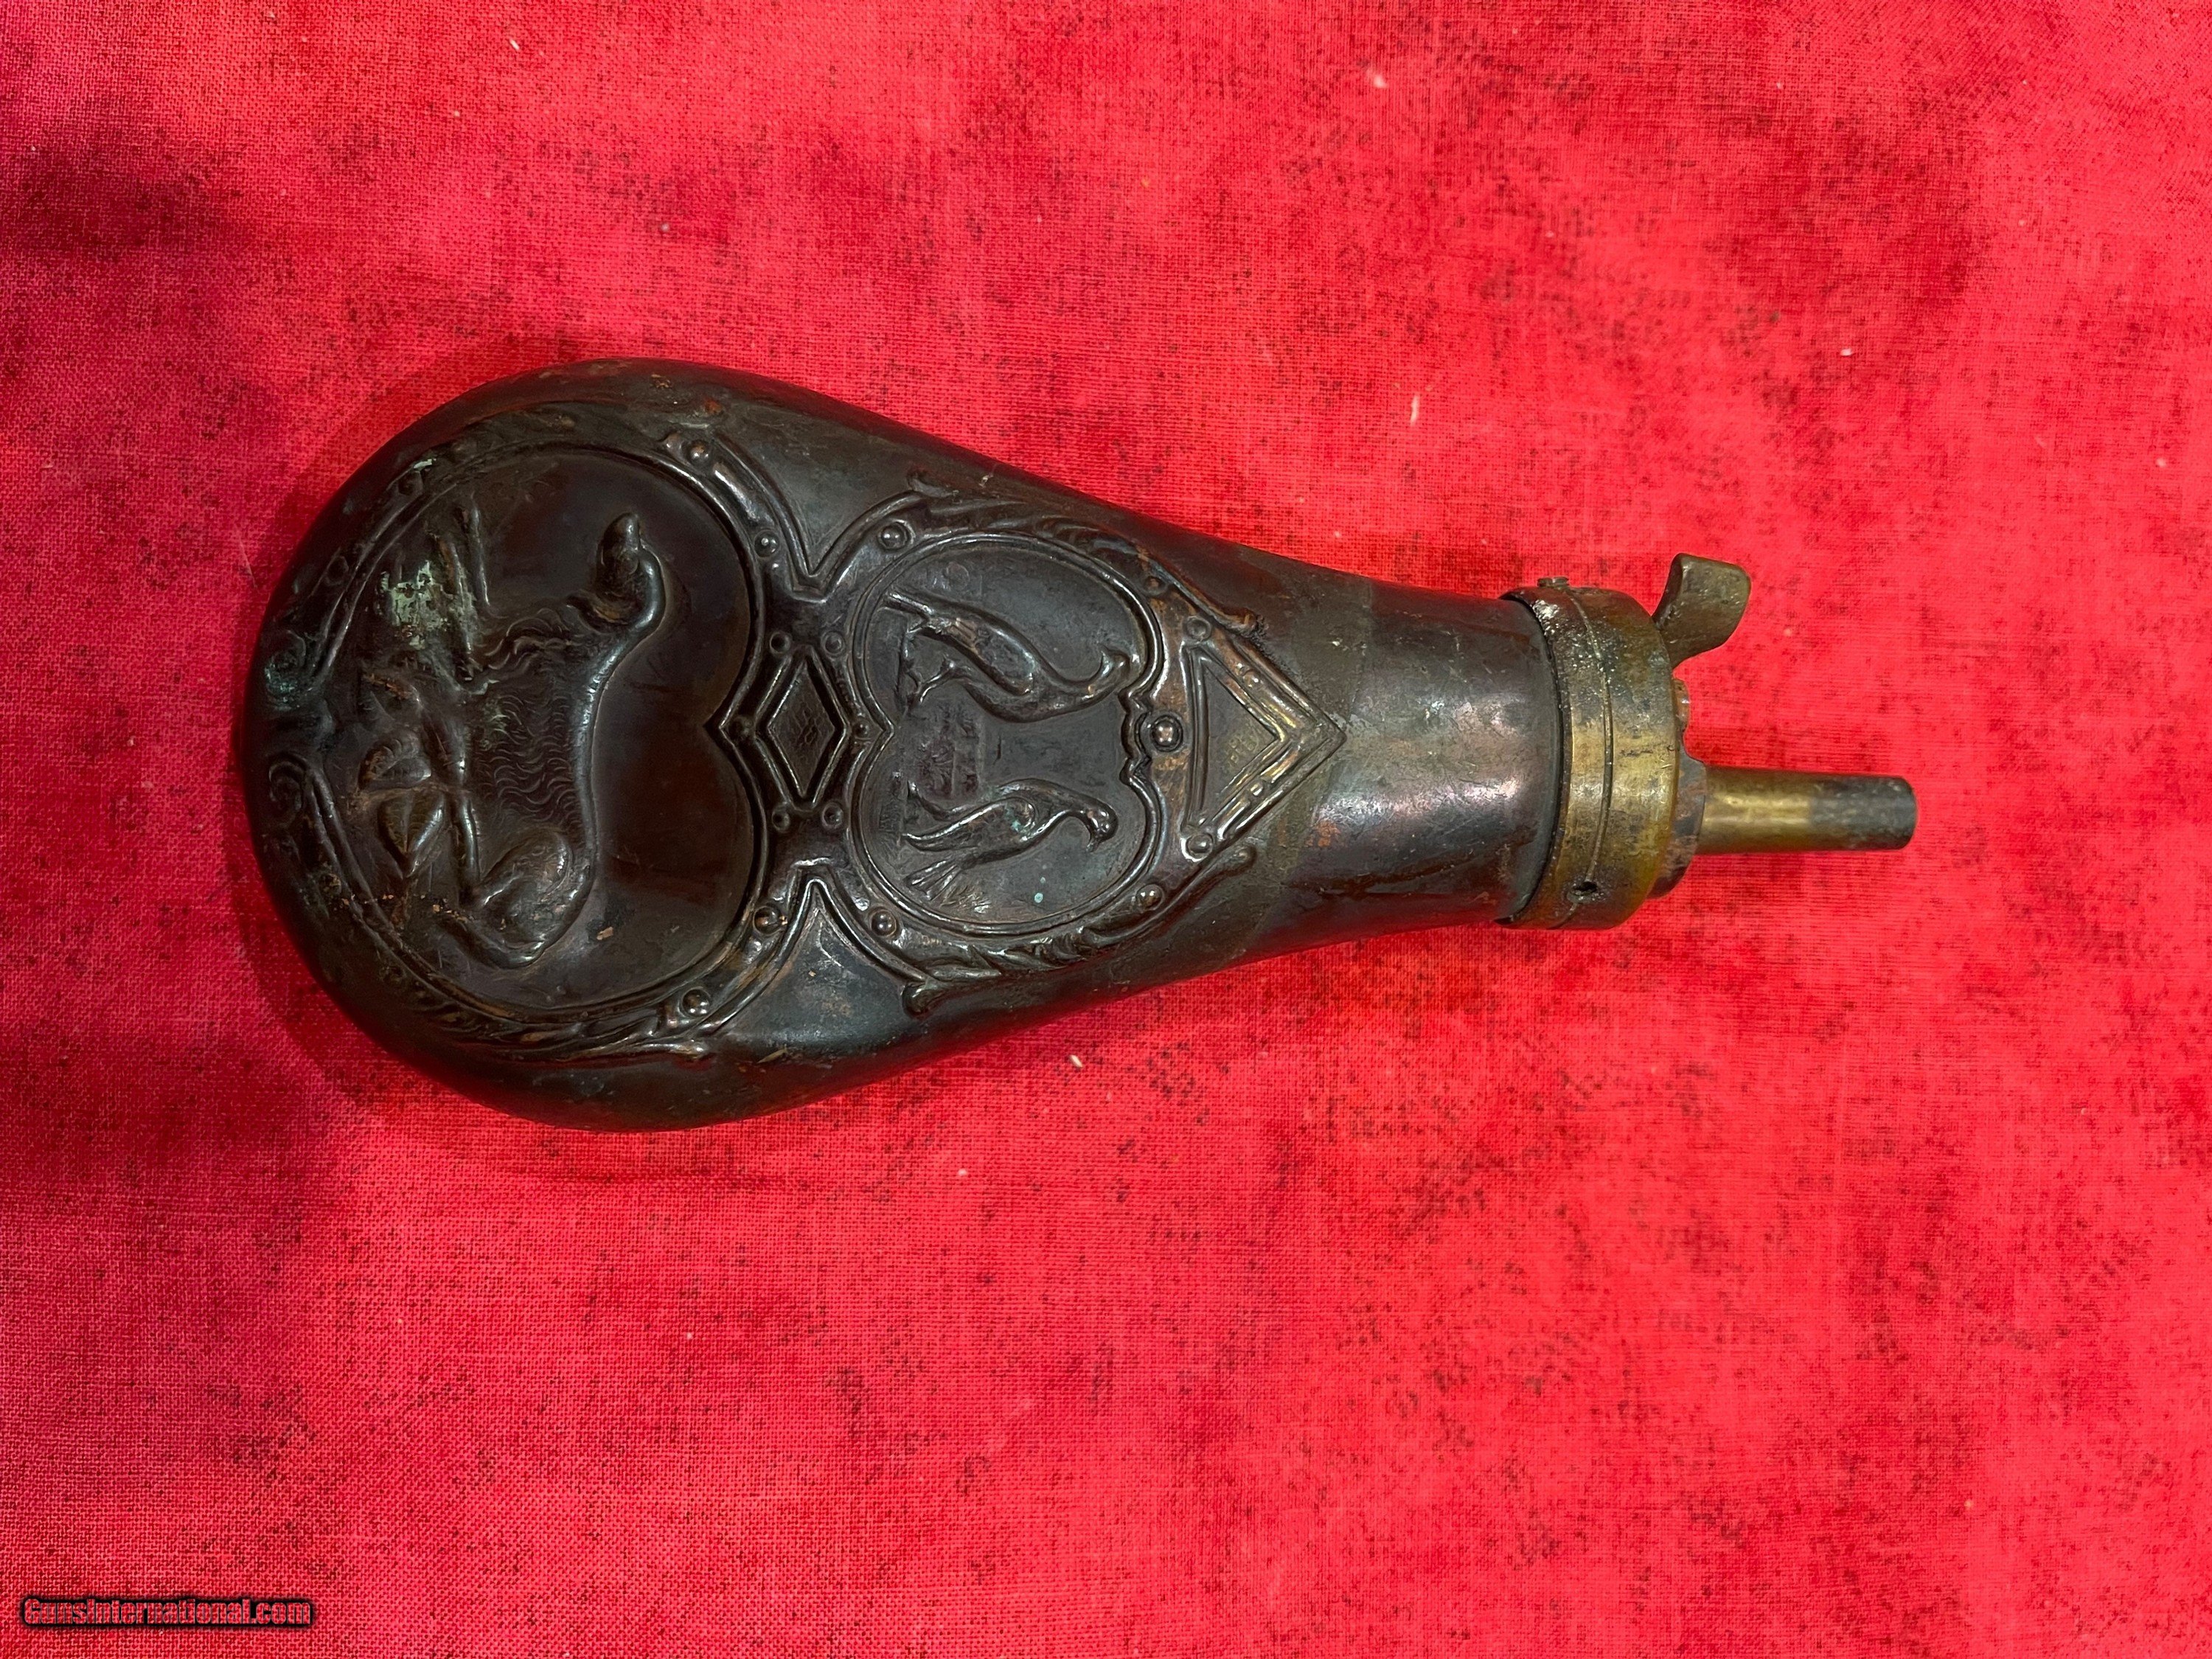 Vintage/Antique Hunting Powder Flask Gunpowder Flask - Brass